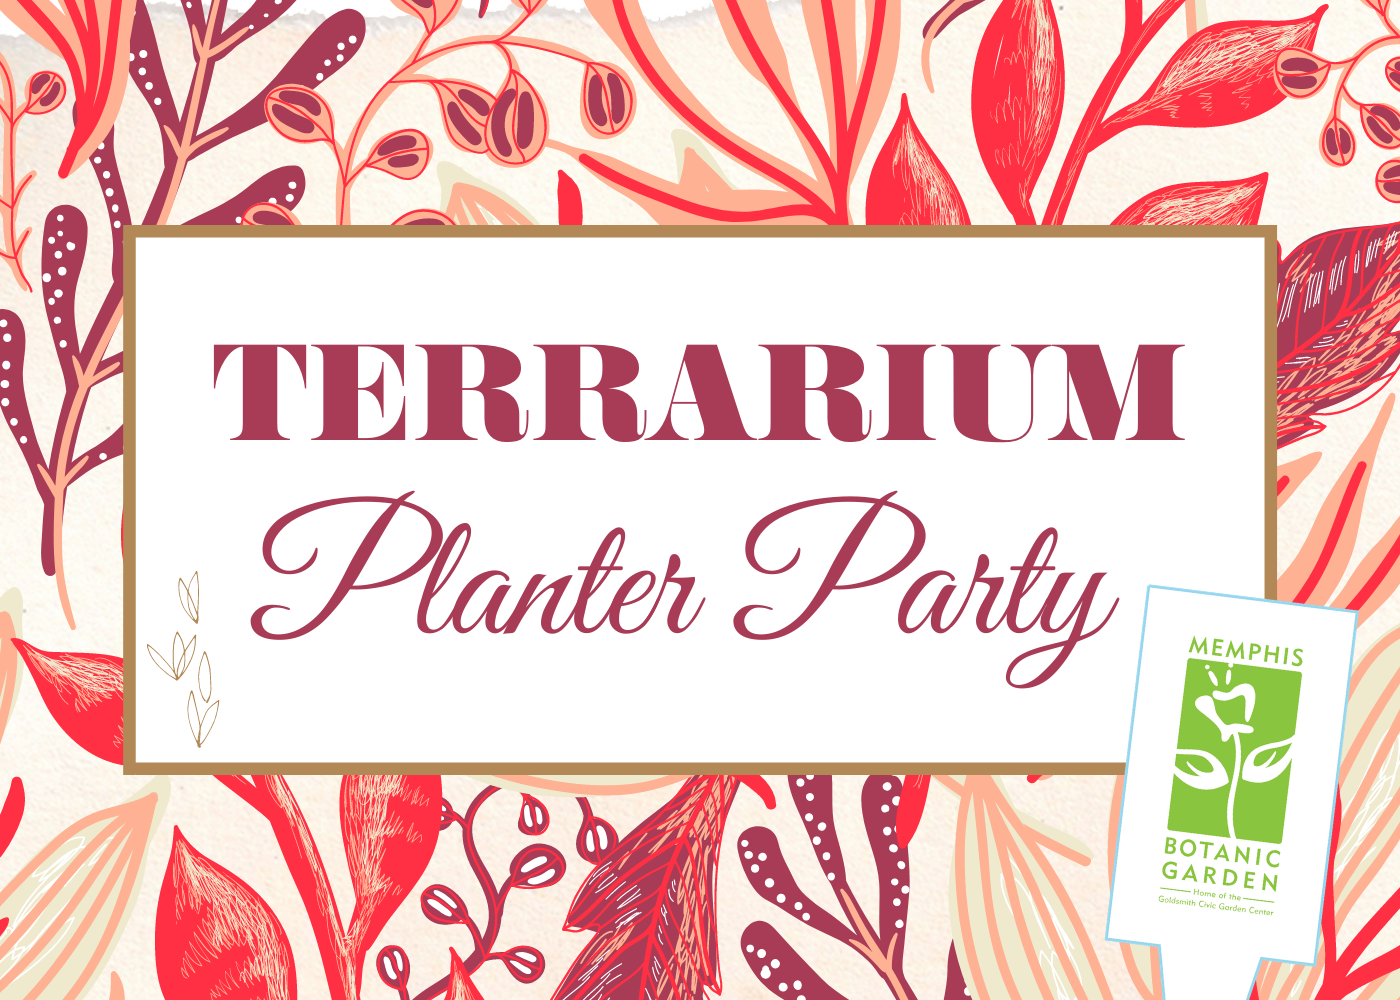 ​Terrarium Planter Party at the Garden June 18